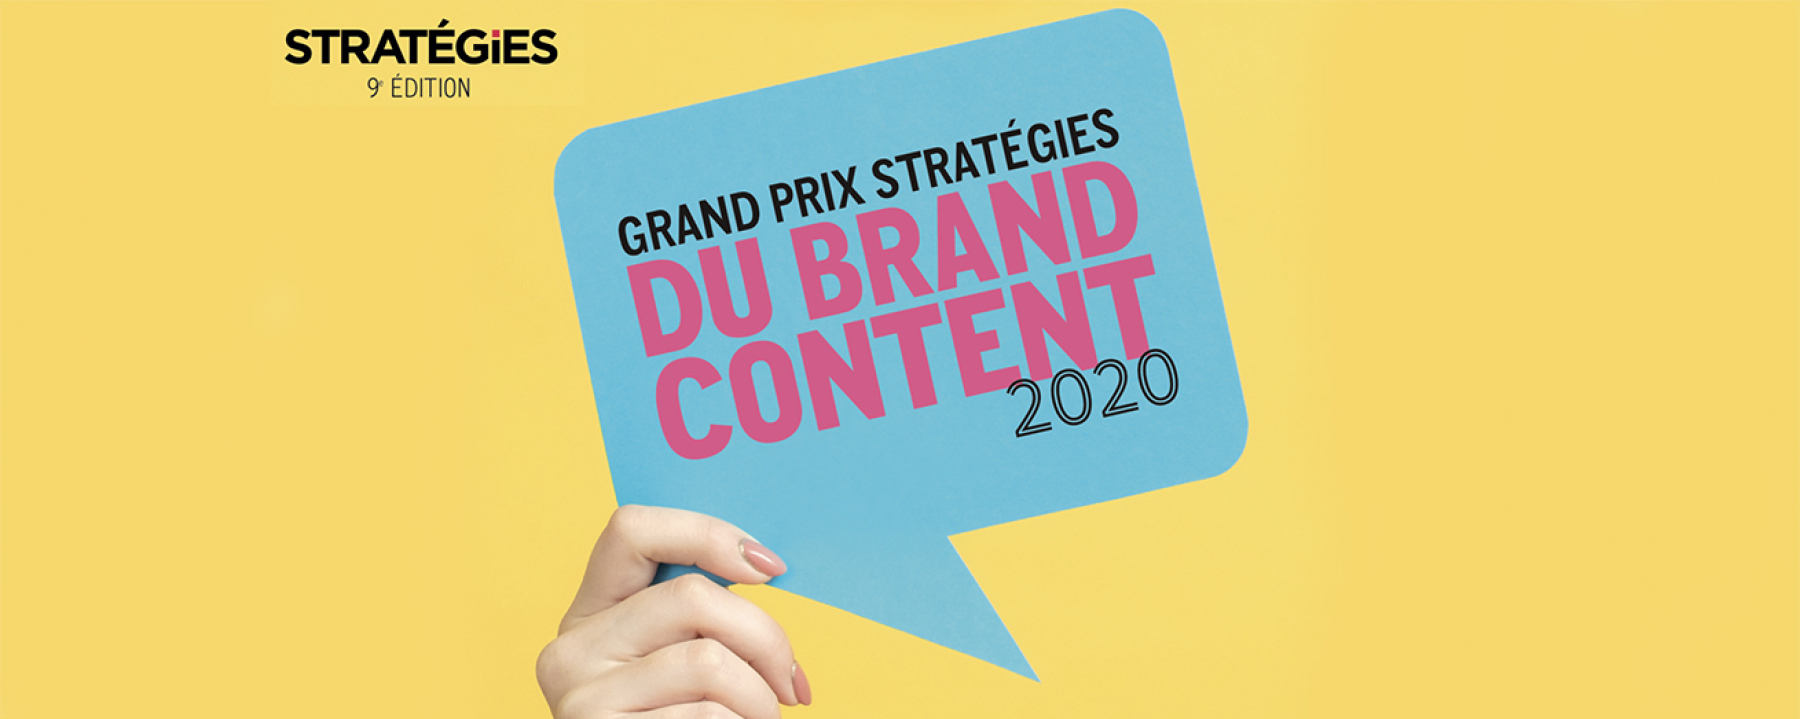 9e édition du Grand Prix Stratégies du Brand Content, un événement organisé par Stratégies le 3 novembre